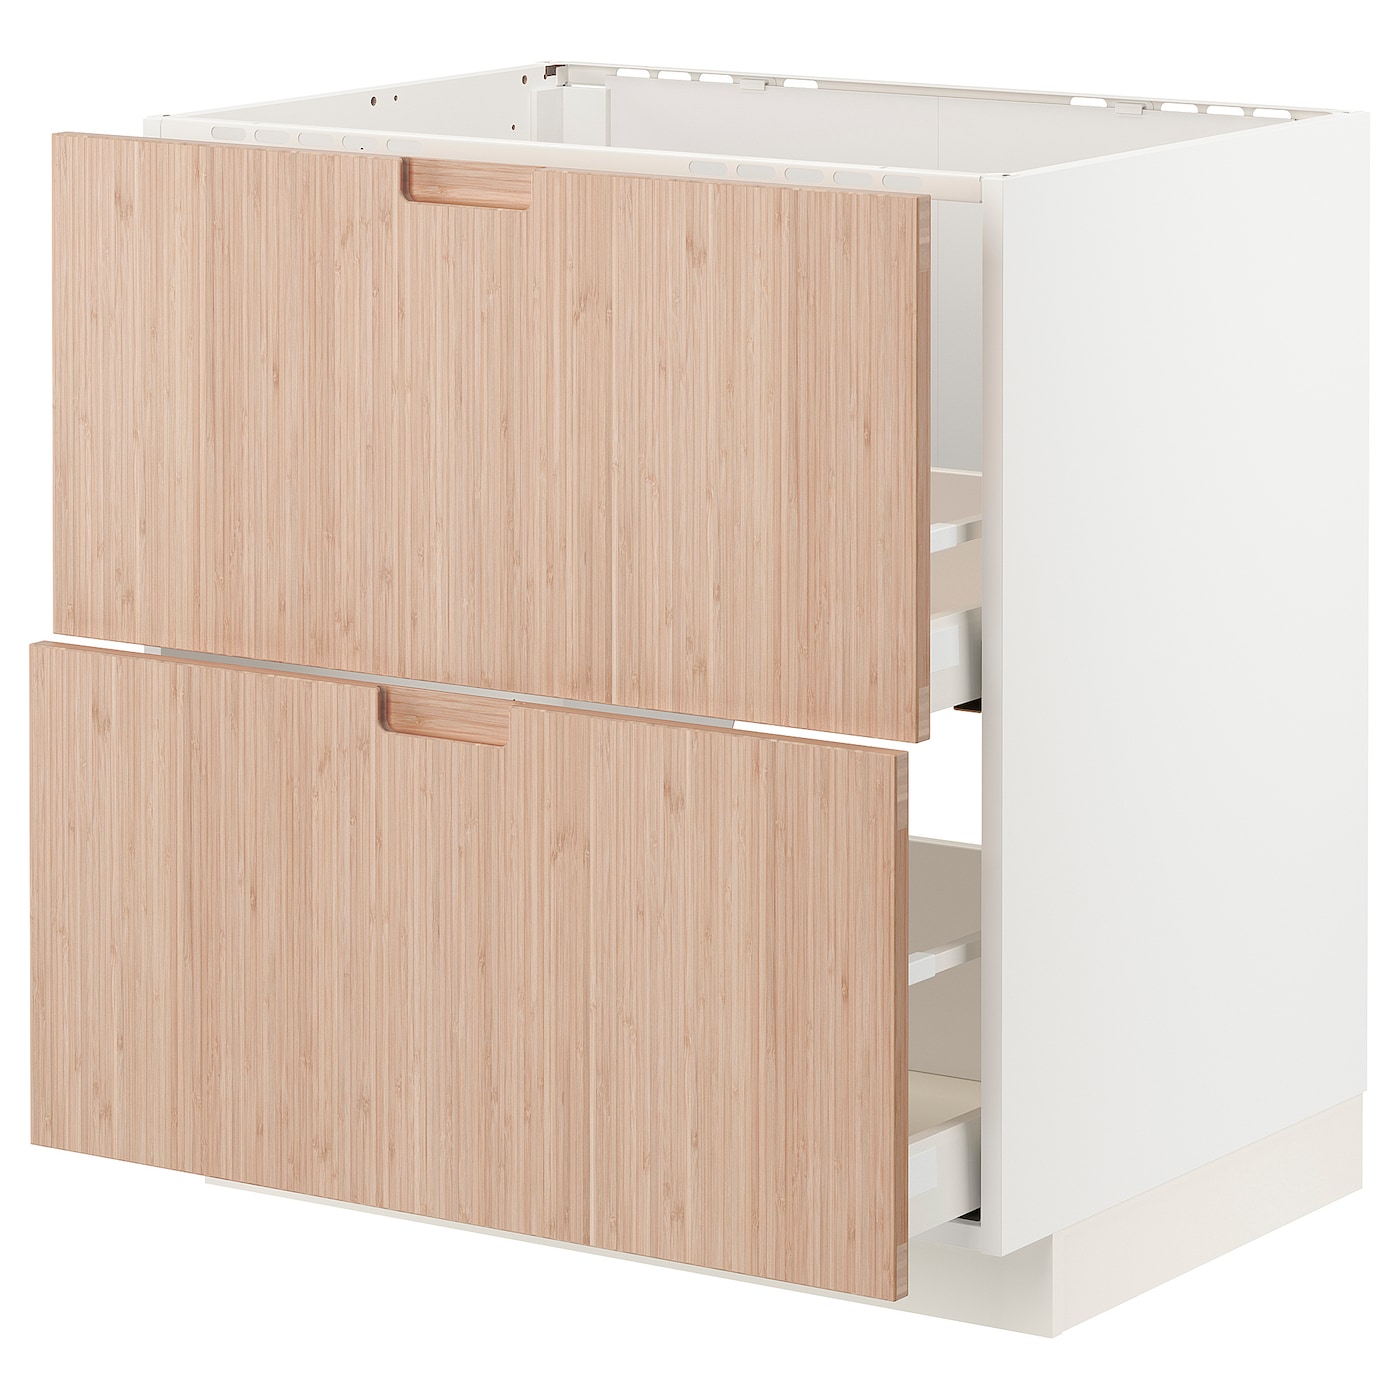 Напольный шкаф - METOD / MAXIMERA IKEA/ МЕТОД/ МАКСИМЕРА ИКЕА,  80х60 см, белый/под беленый дуб